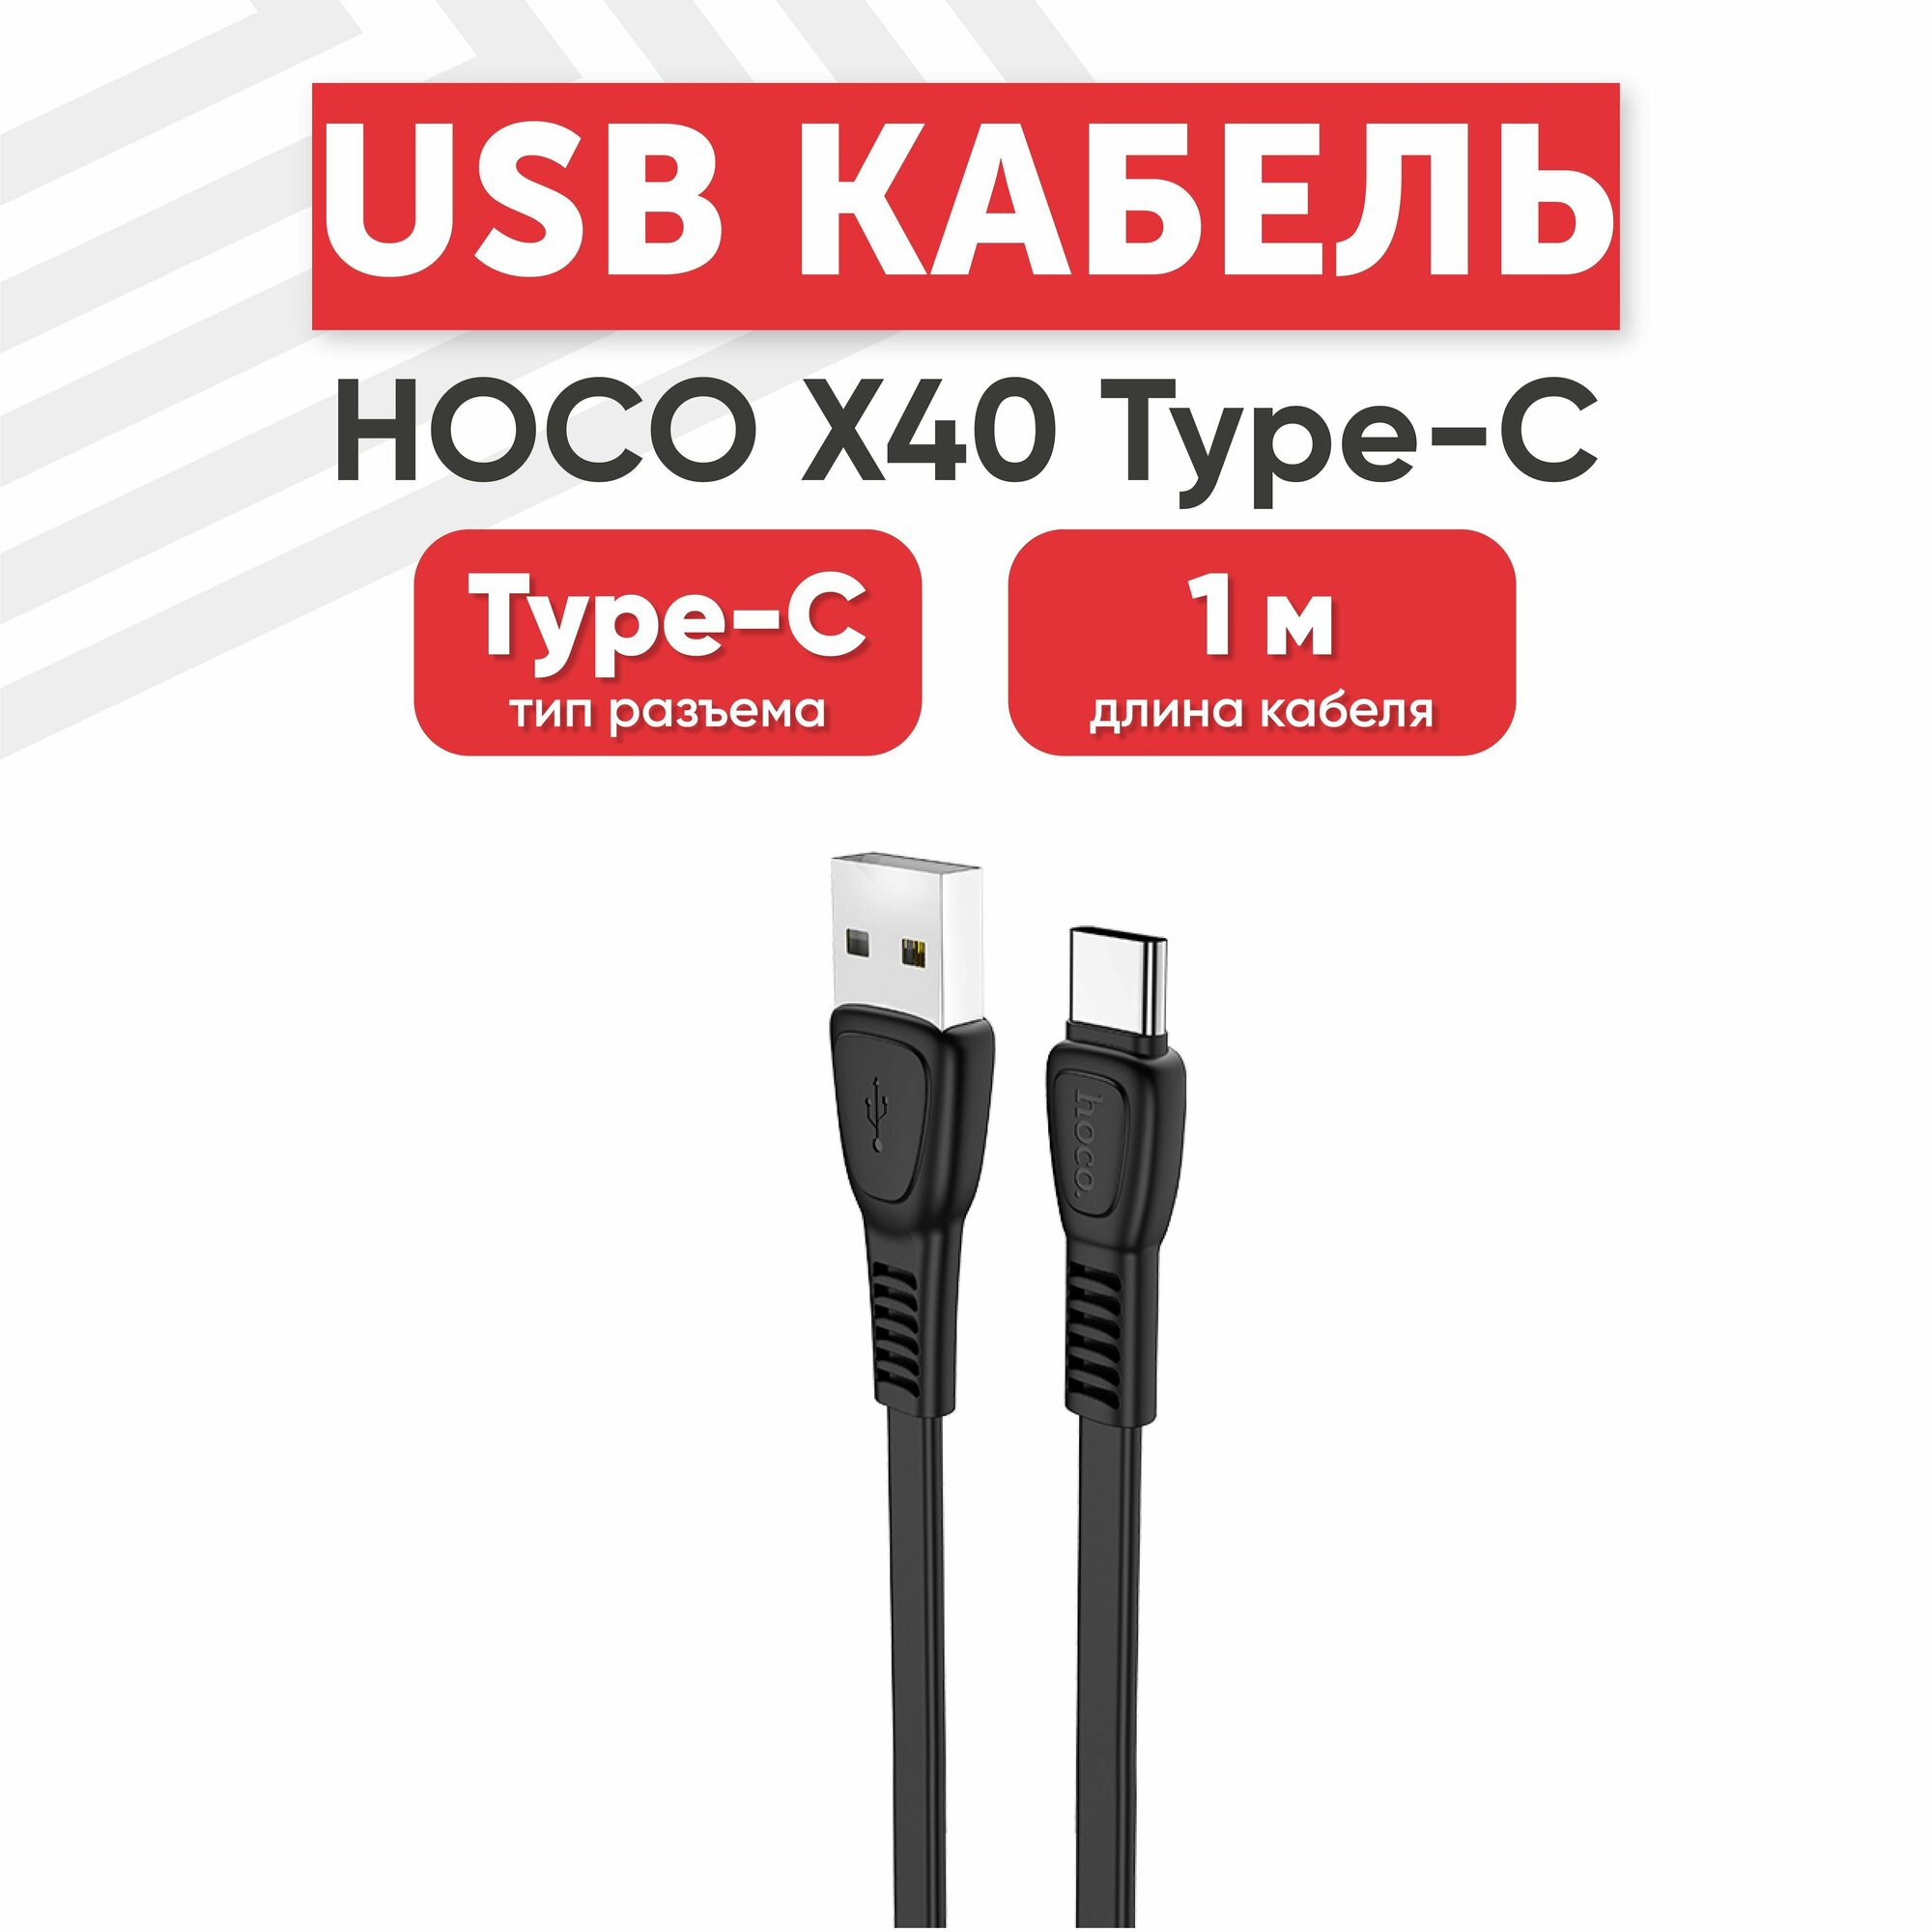 USB кабель Hoco X40 для зарядки, передачи данных, Type-C, 3А, 1 метр, TPE, черный